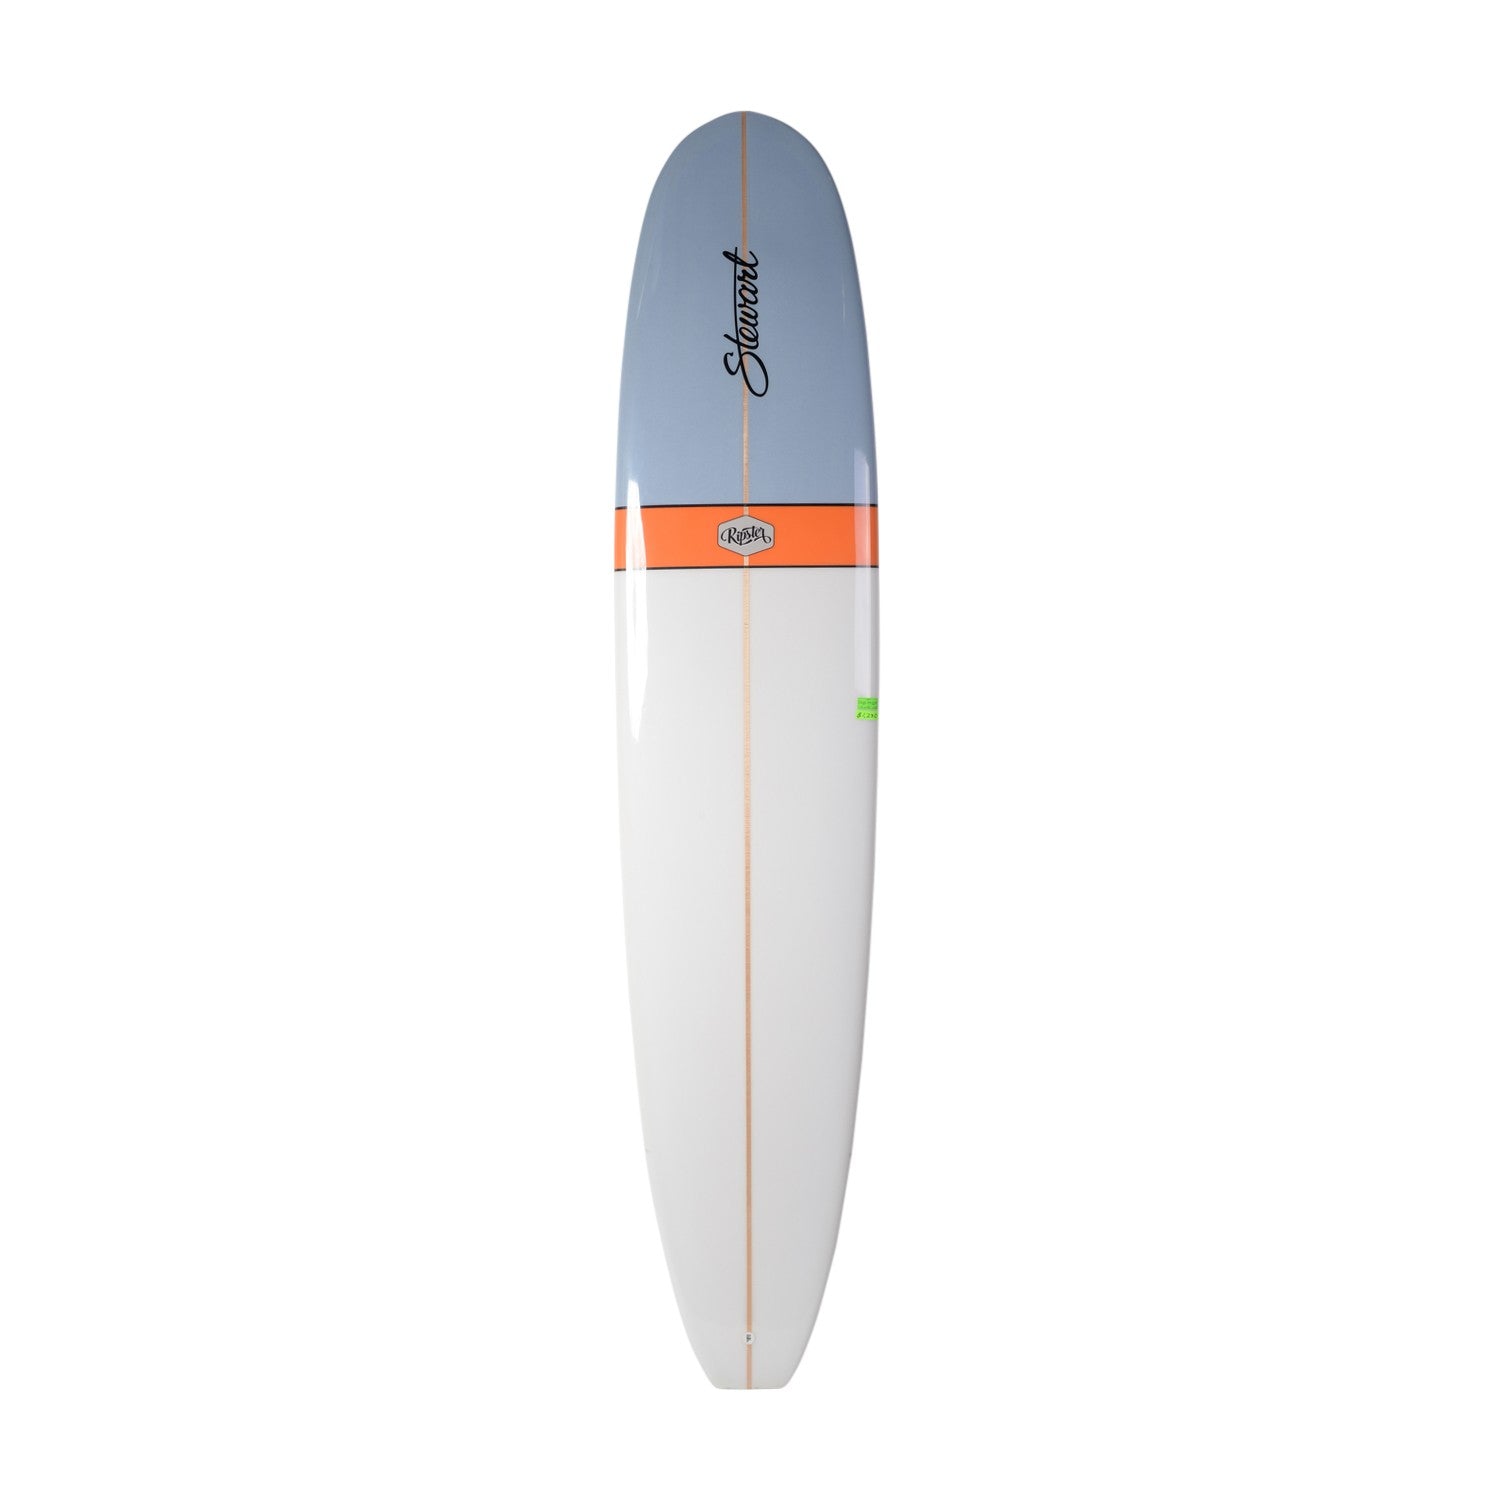 STEWART Surfboards - Ripster 9' (PU) - Blue / Orange